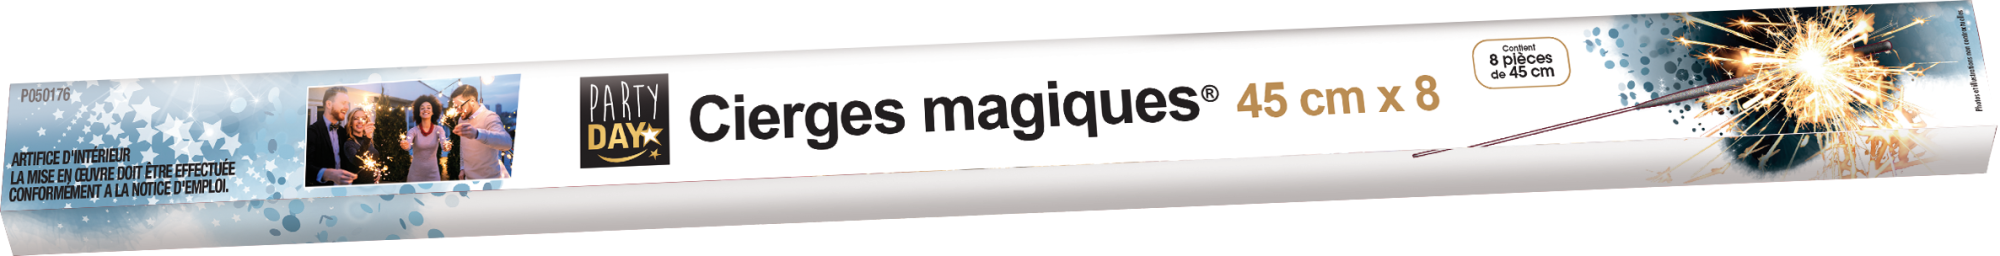 P050176-CIERGES MAGIQUES 45 CM